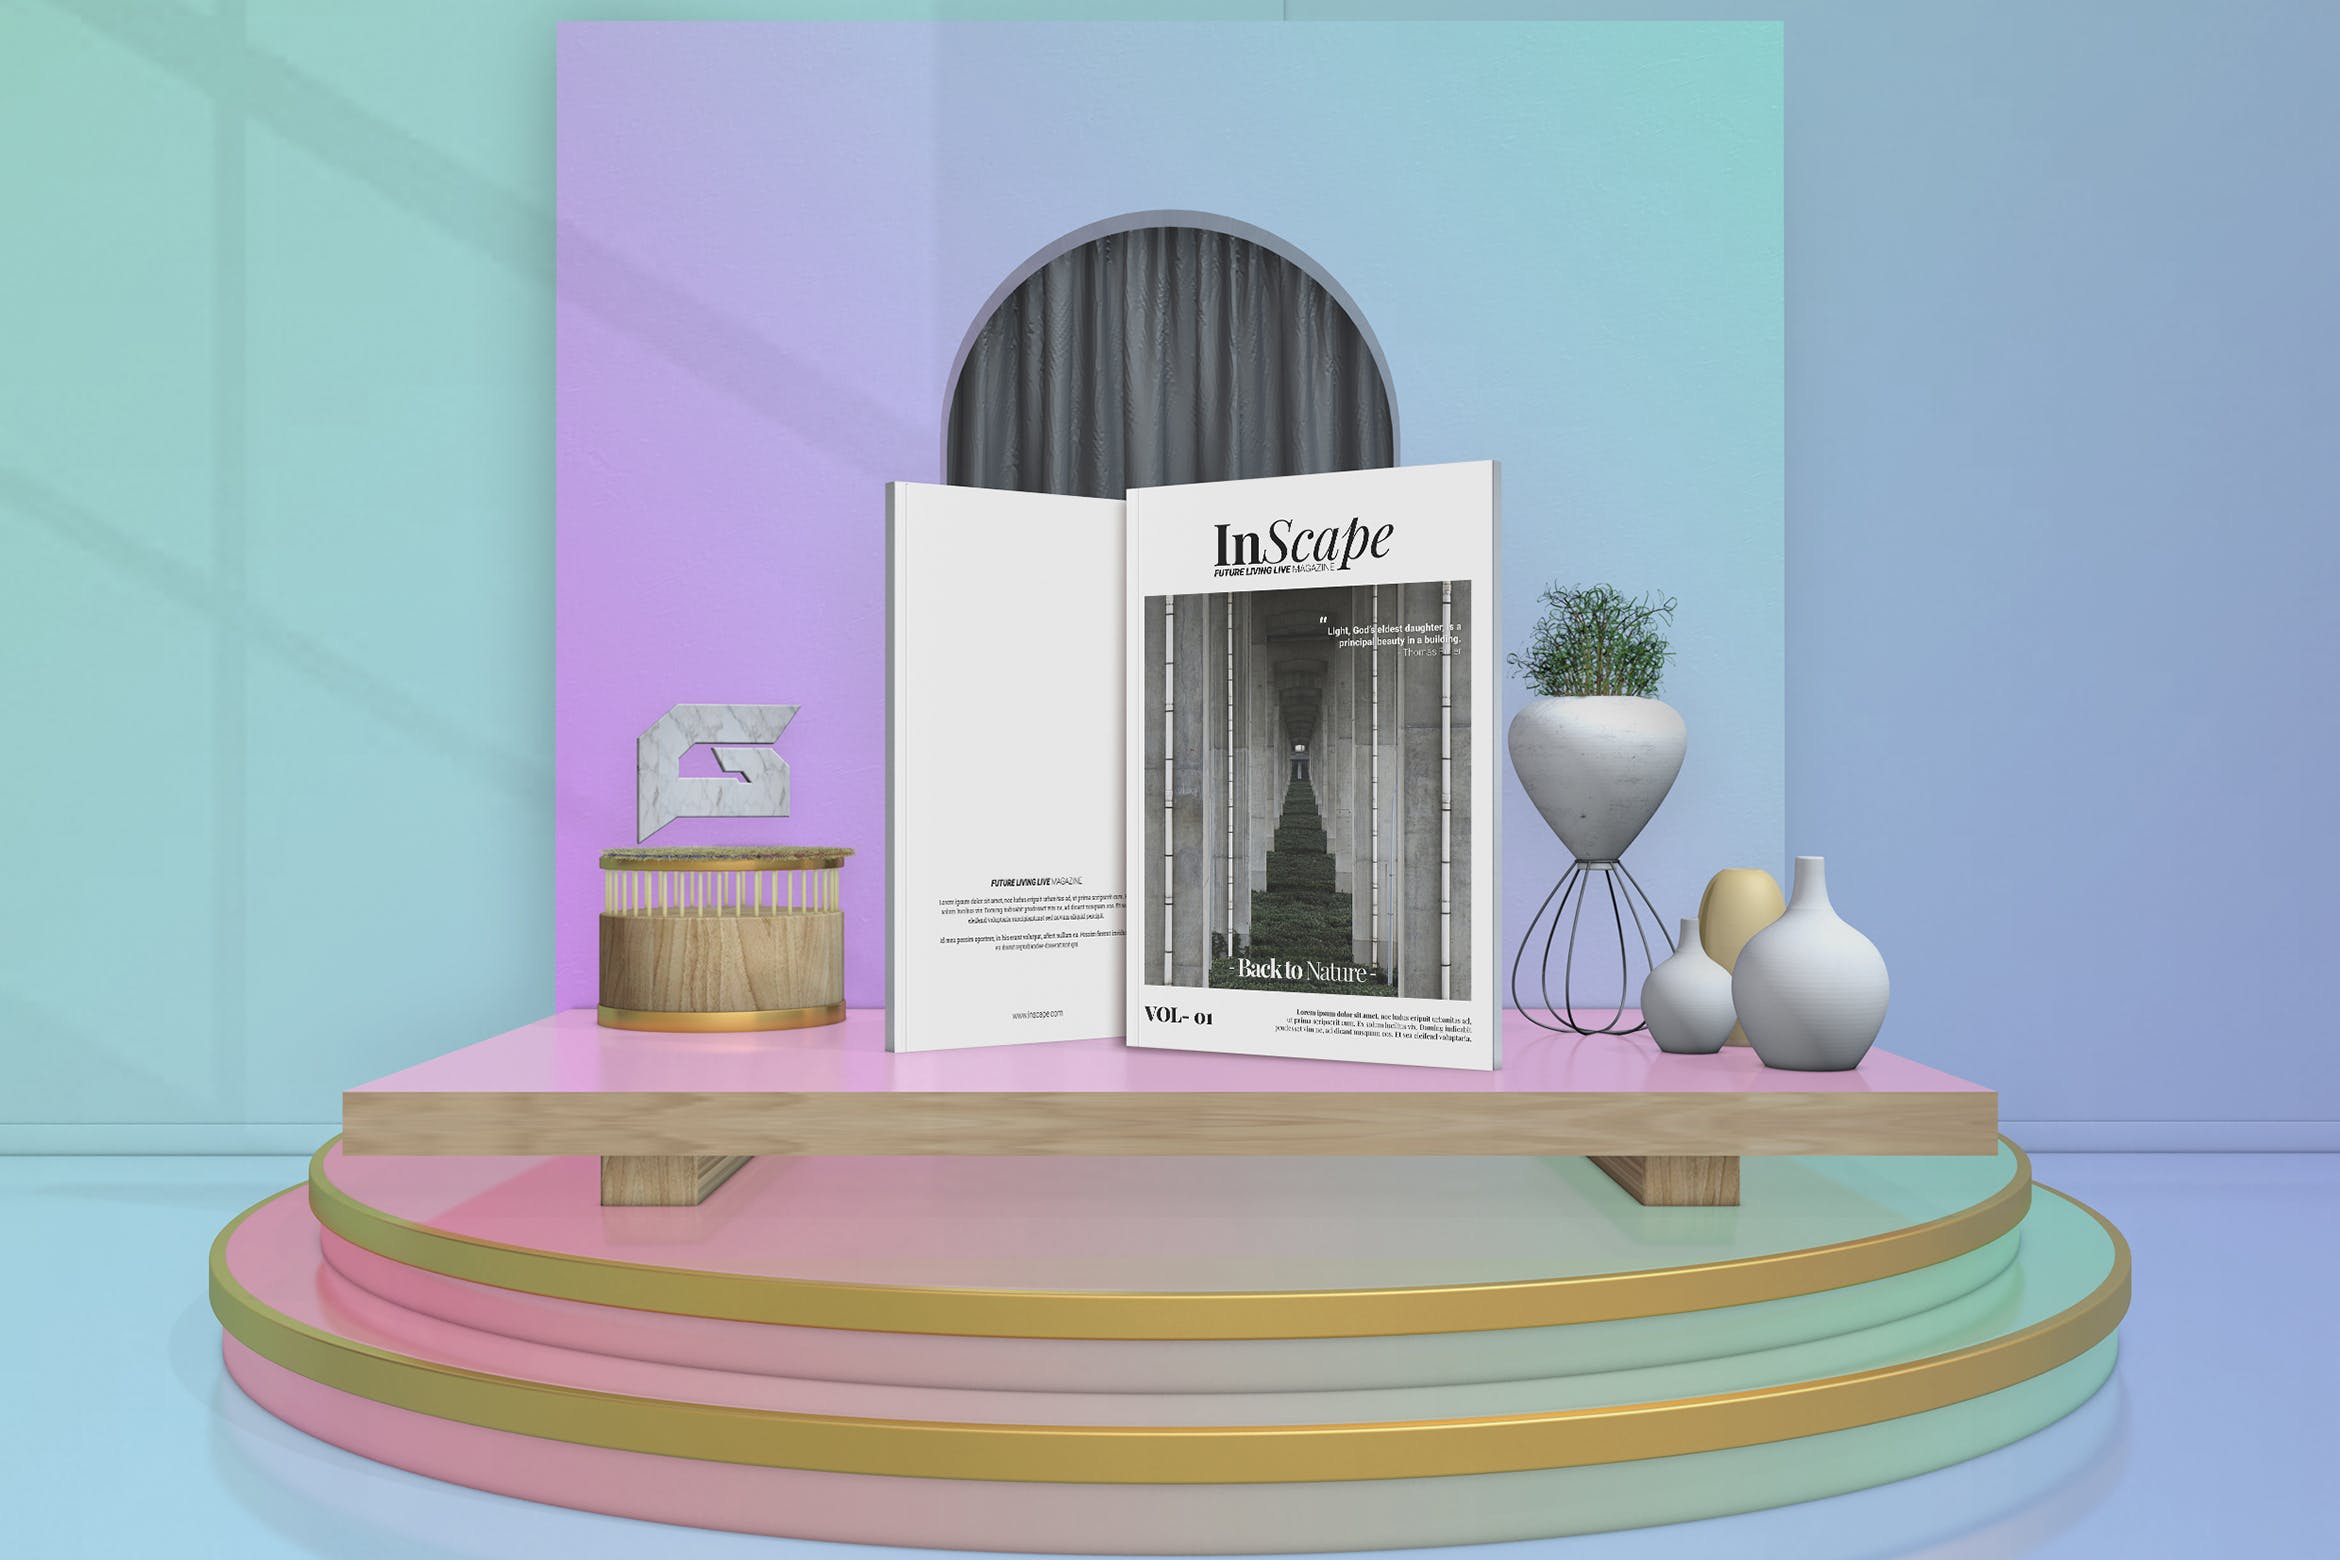 室内设计主题第一素材精选杂志排版设计模板 Inscape Interior Magazine插图